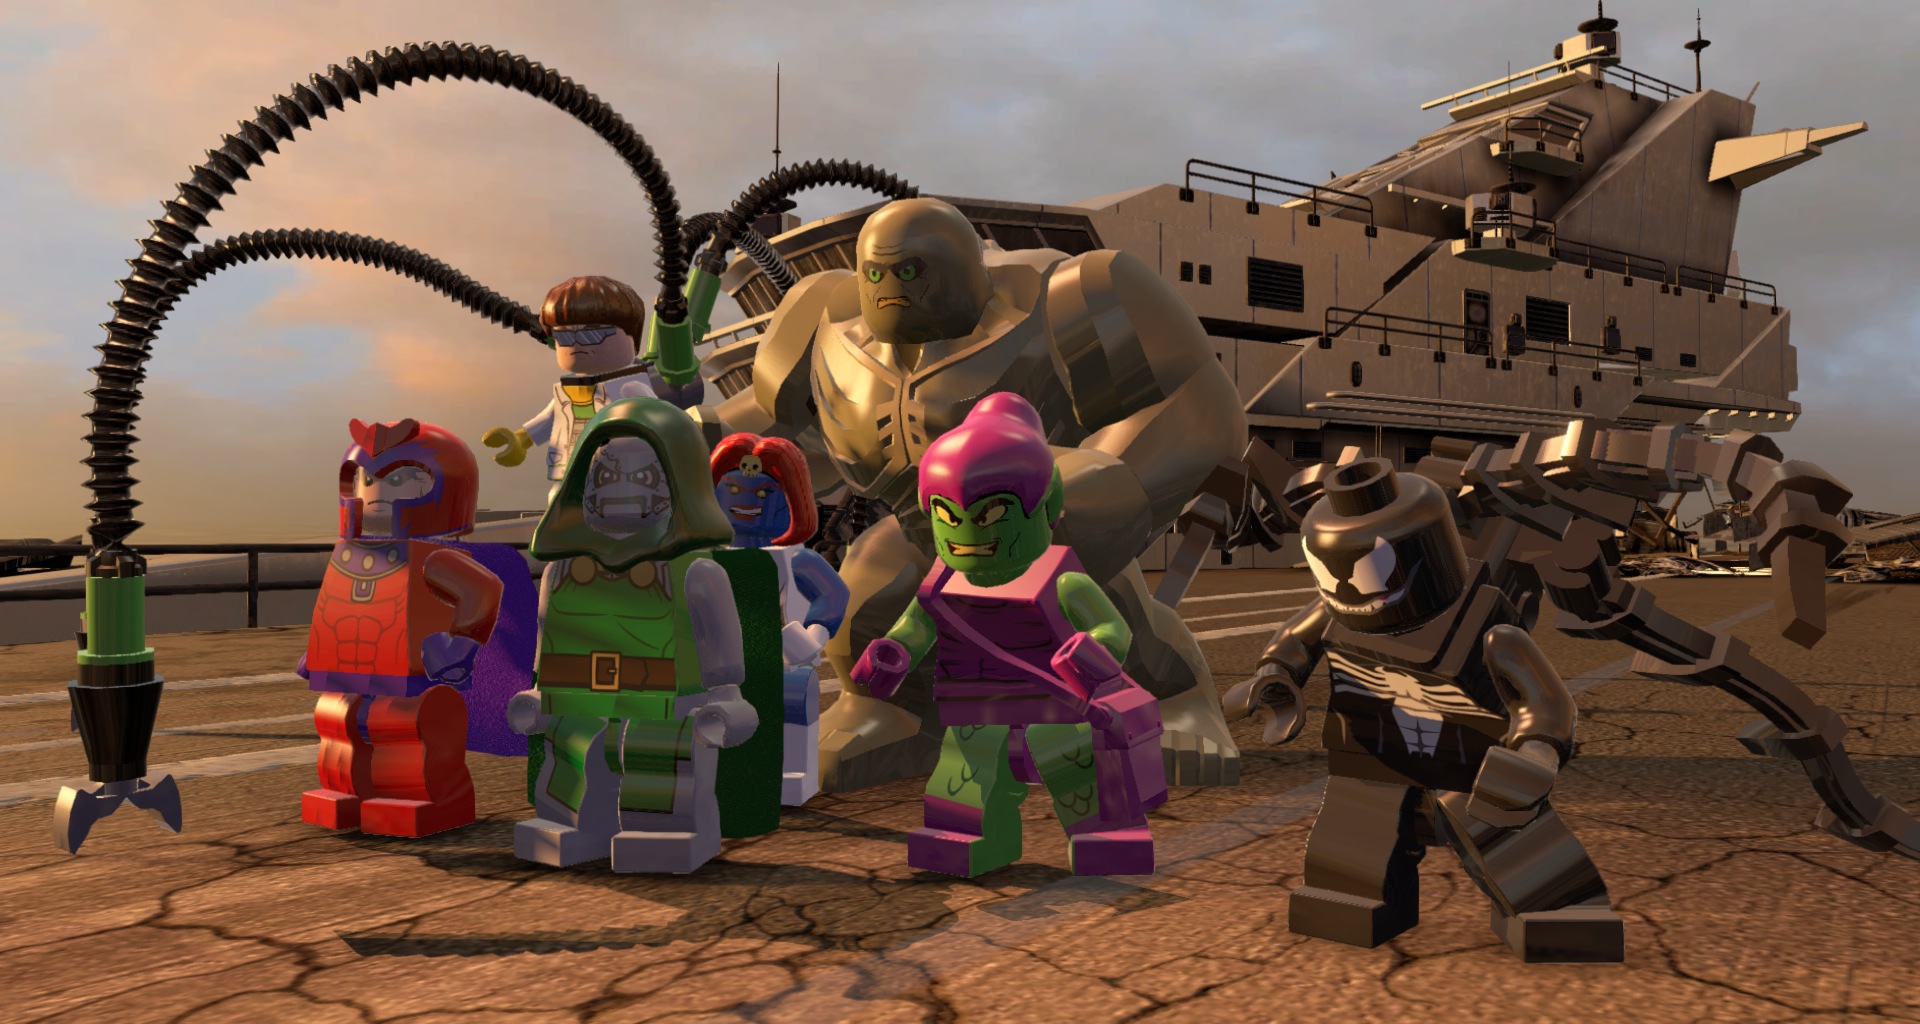 Jogo Lego Marvel Super Heroes 2 PS4 Warner Bros com o Melhor Preço